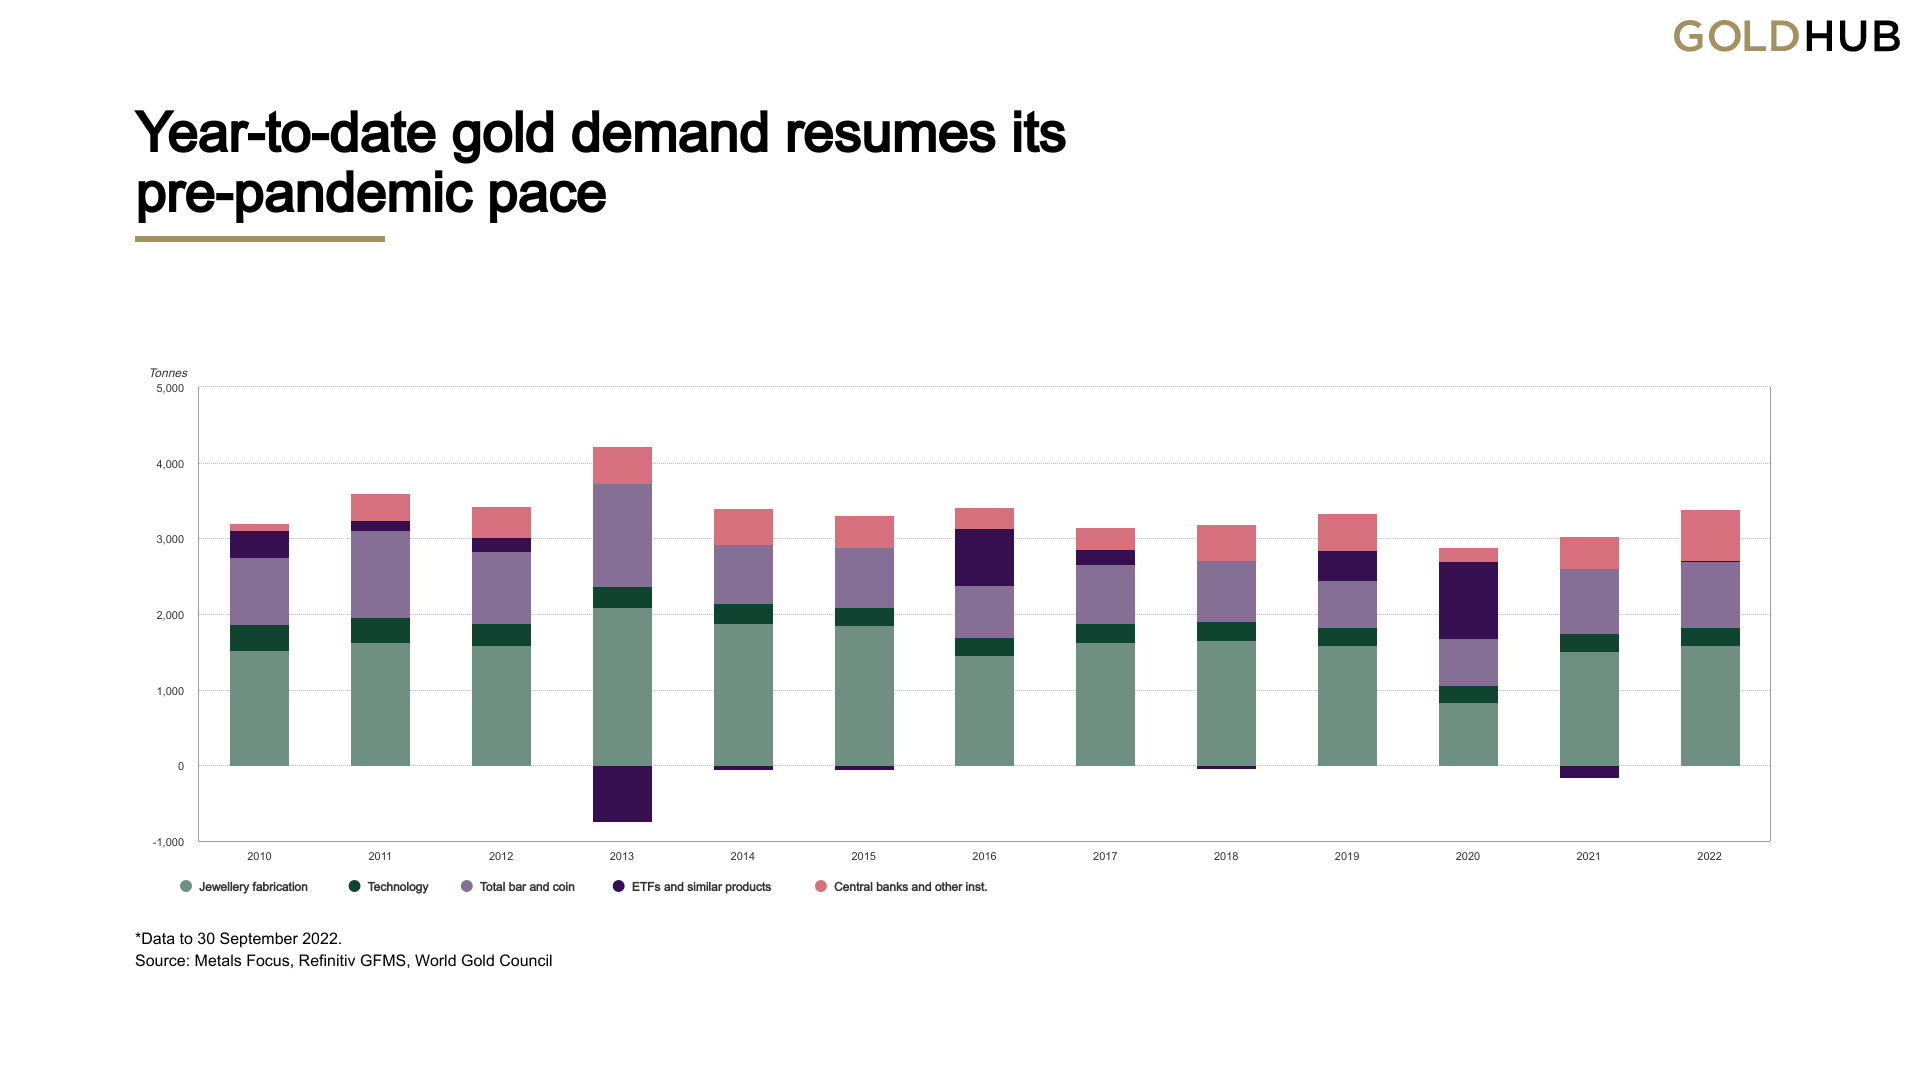 خرید طلای بانک مرکزی در سال جاری در سه ماهه سوم به بالاترین میزان خود در سه ماهه رسید، 400 تن خریداری شده 